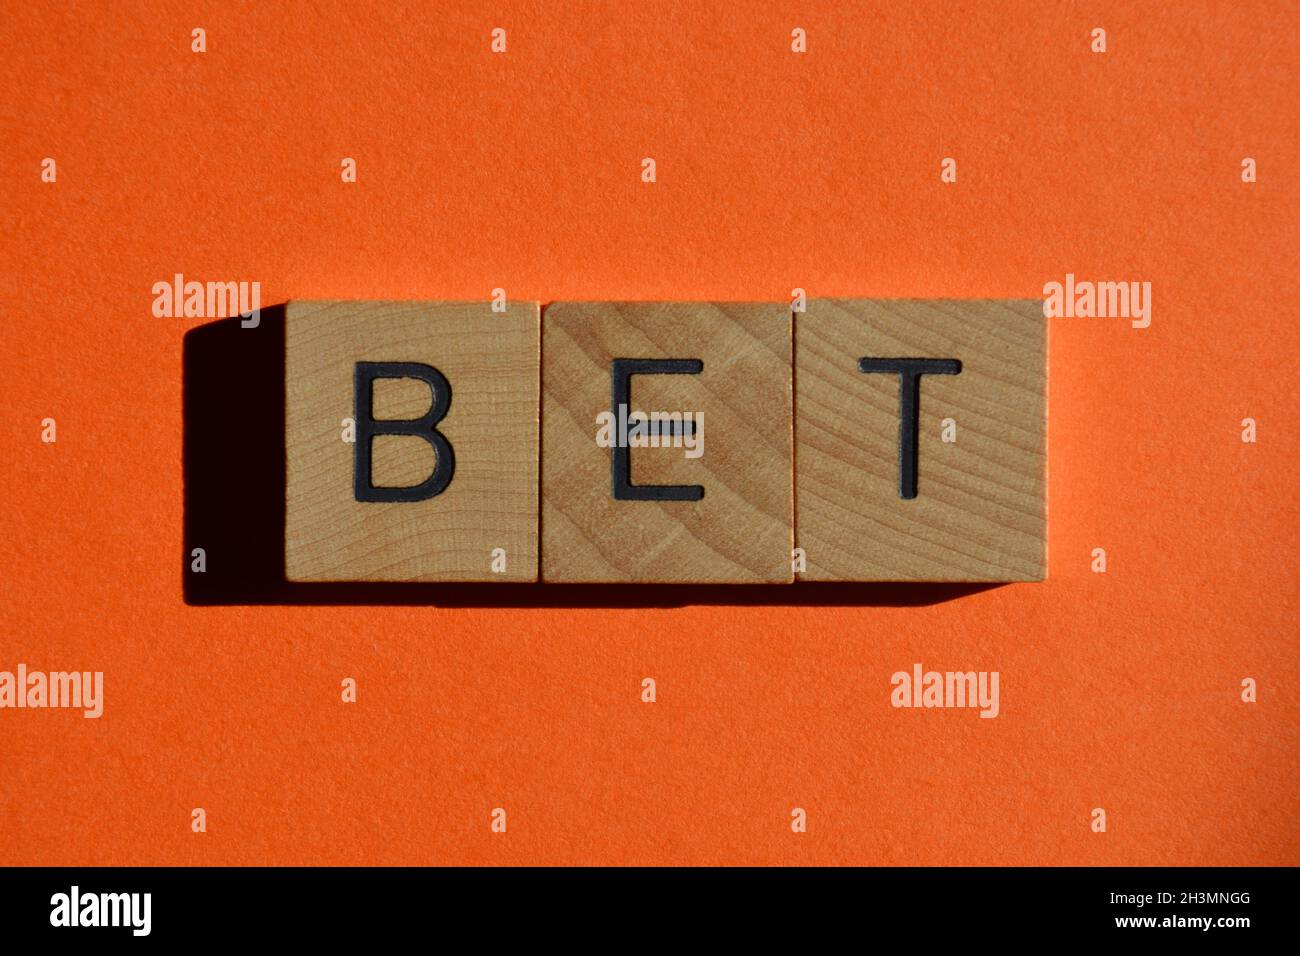 Scommessa, parola in lettere di legno lettera isolata su sfondo arancione. Generazione Z slang, termine per l'accordo o l'approvazione Foto Stock